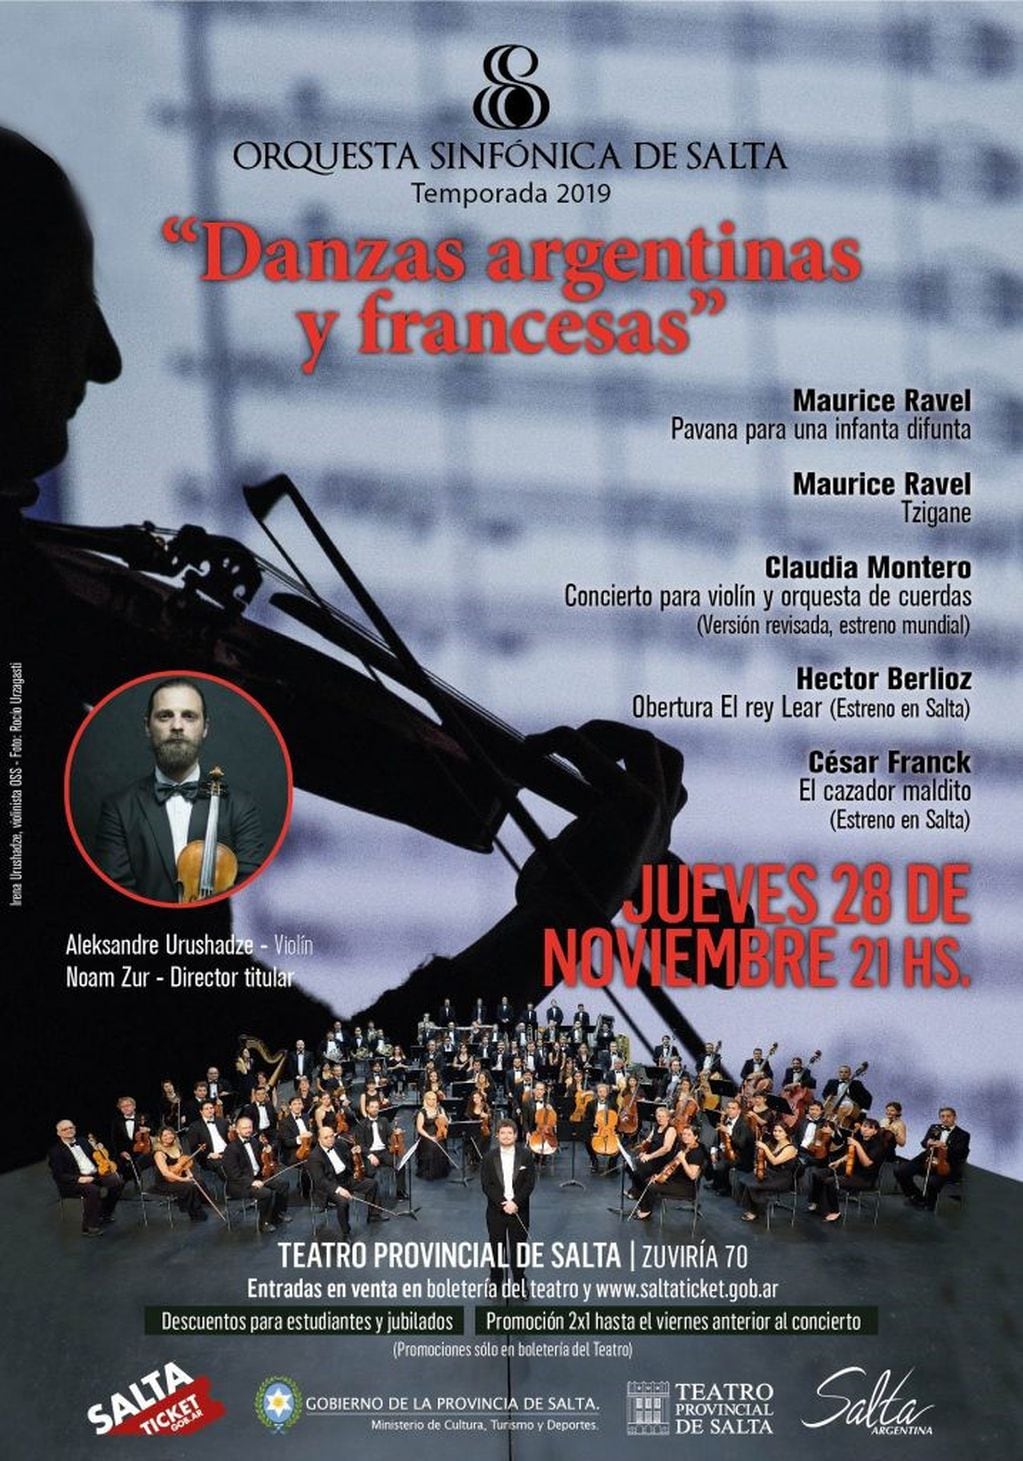 Orquesta Sinfónica de Salta en Danzas argentinas y francesas (Facebook Orquesta Sinfónica de Salta)